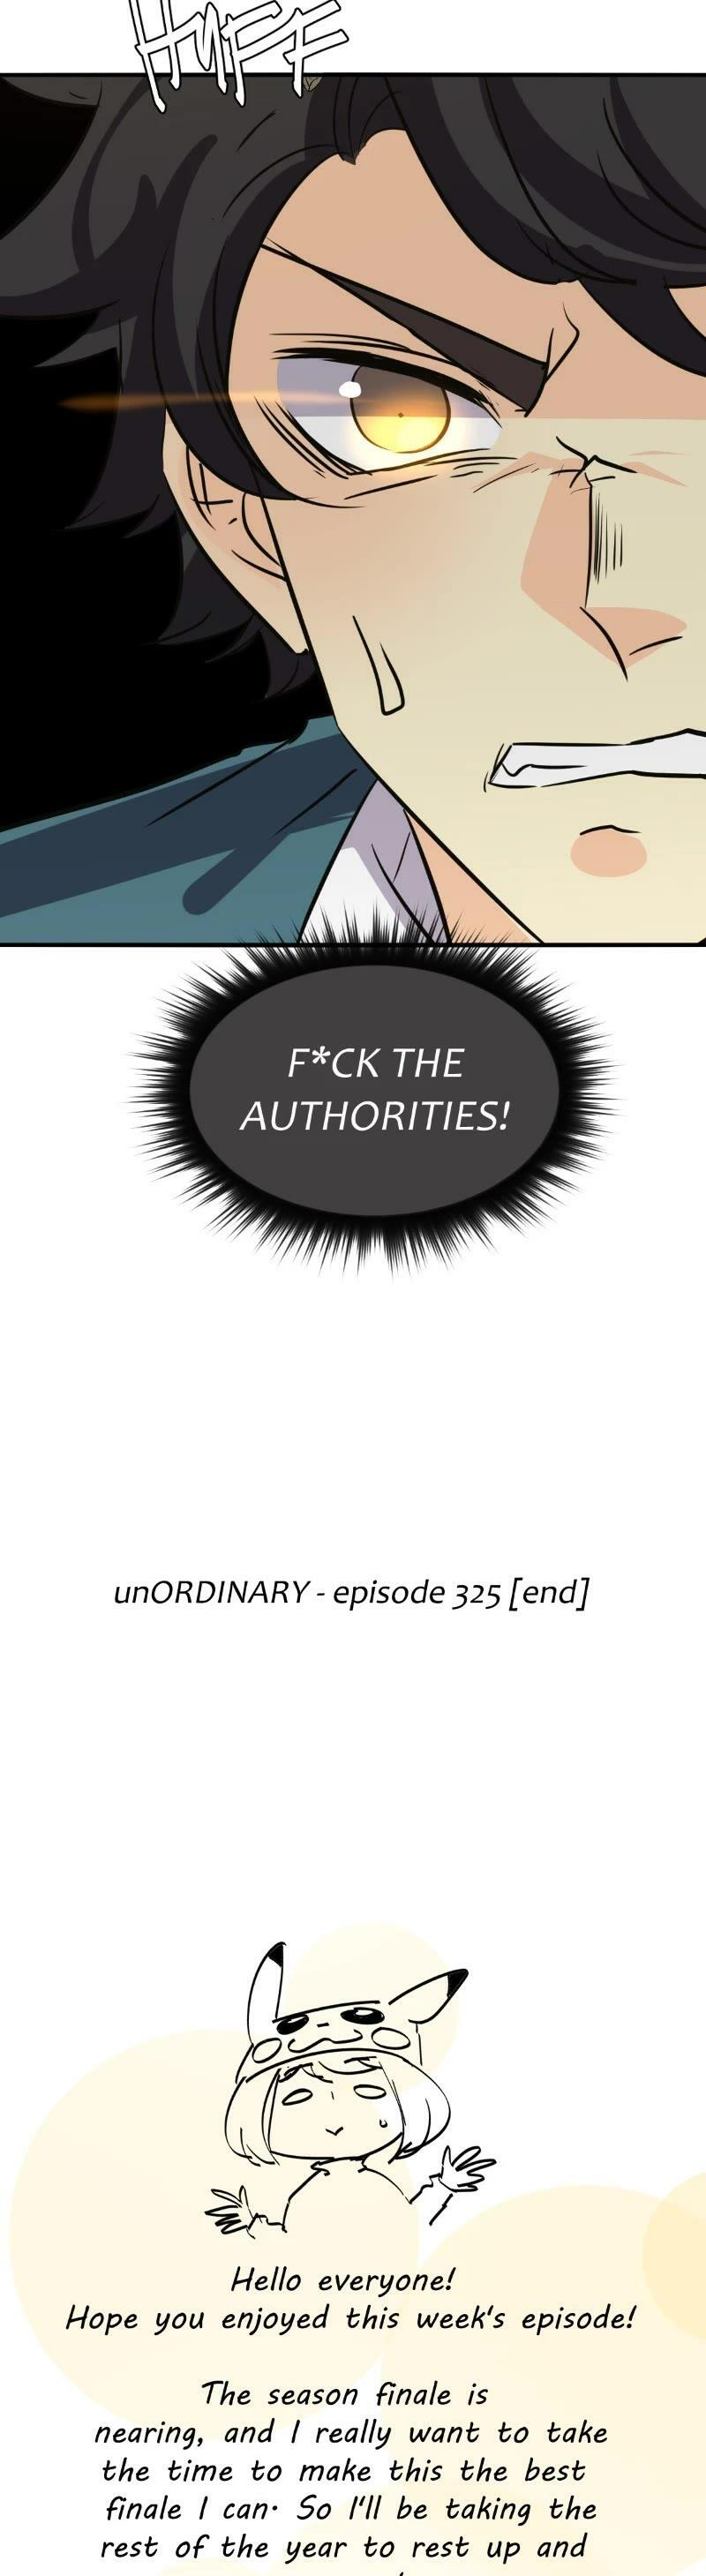 Unordinary Chapter 333: Episode 325 page 50 - unordinary-manga